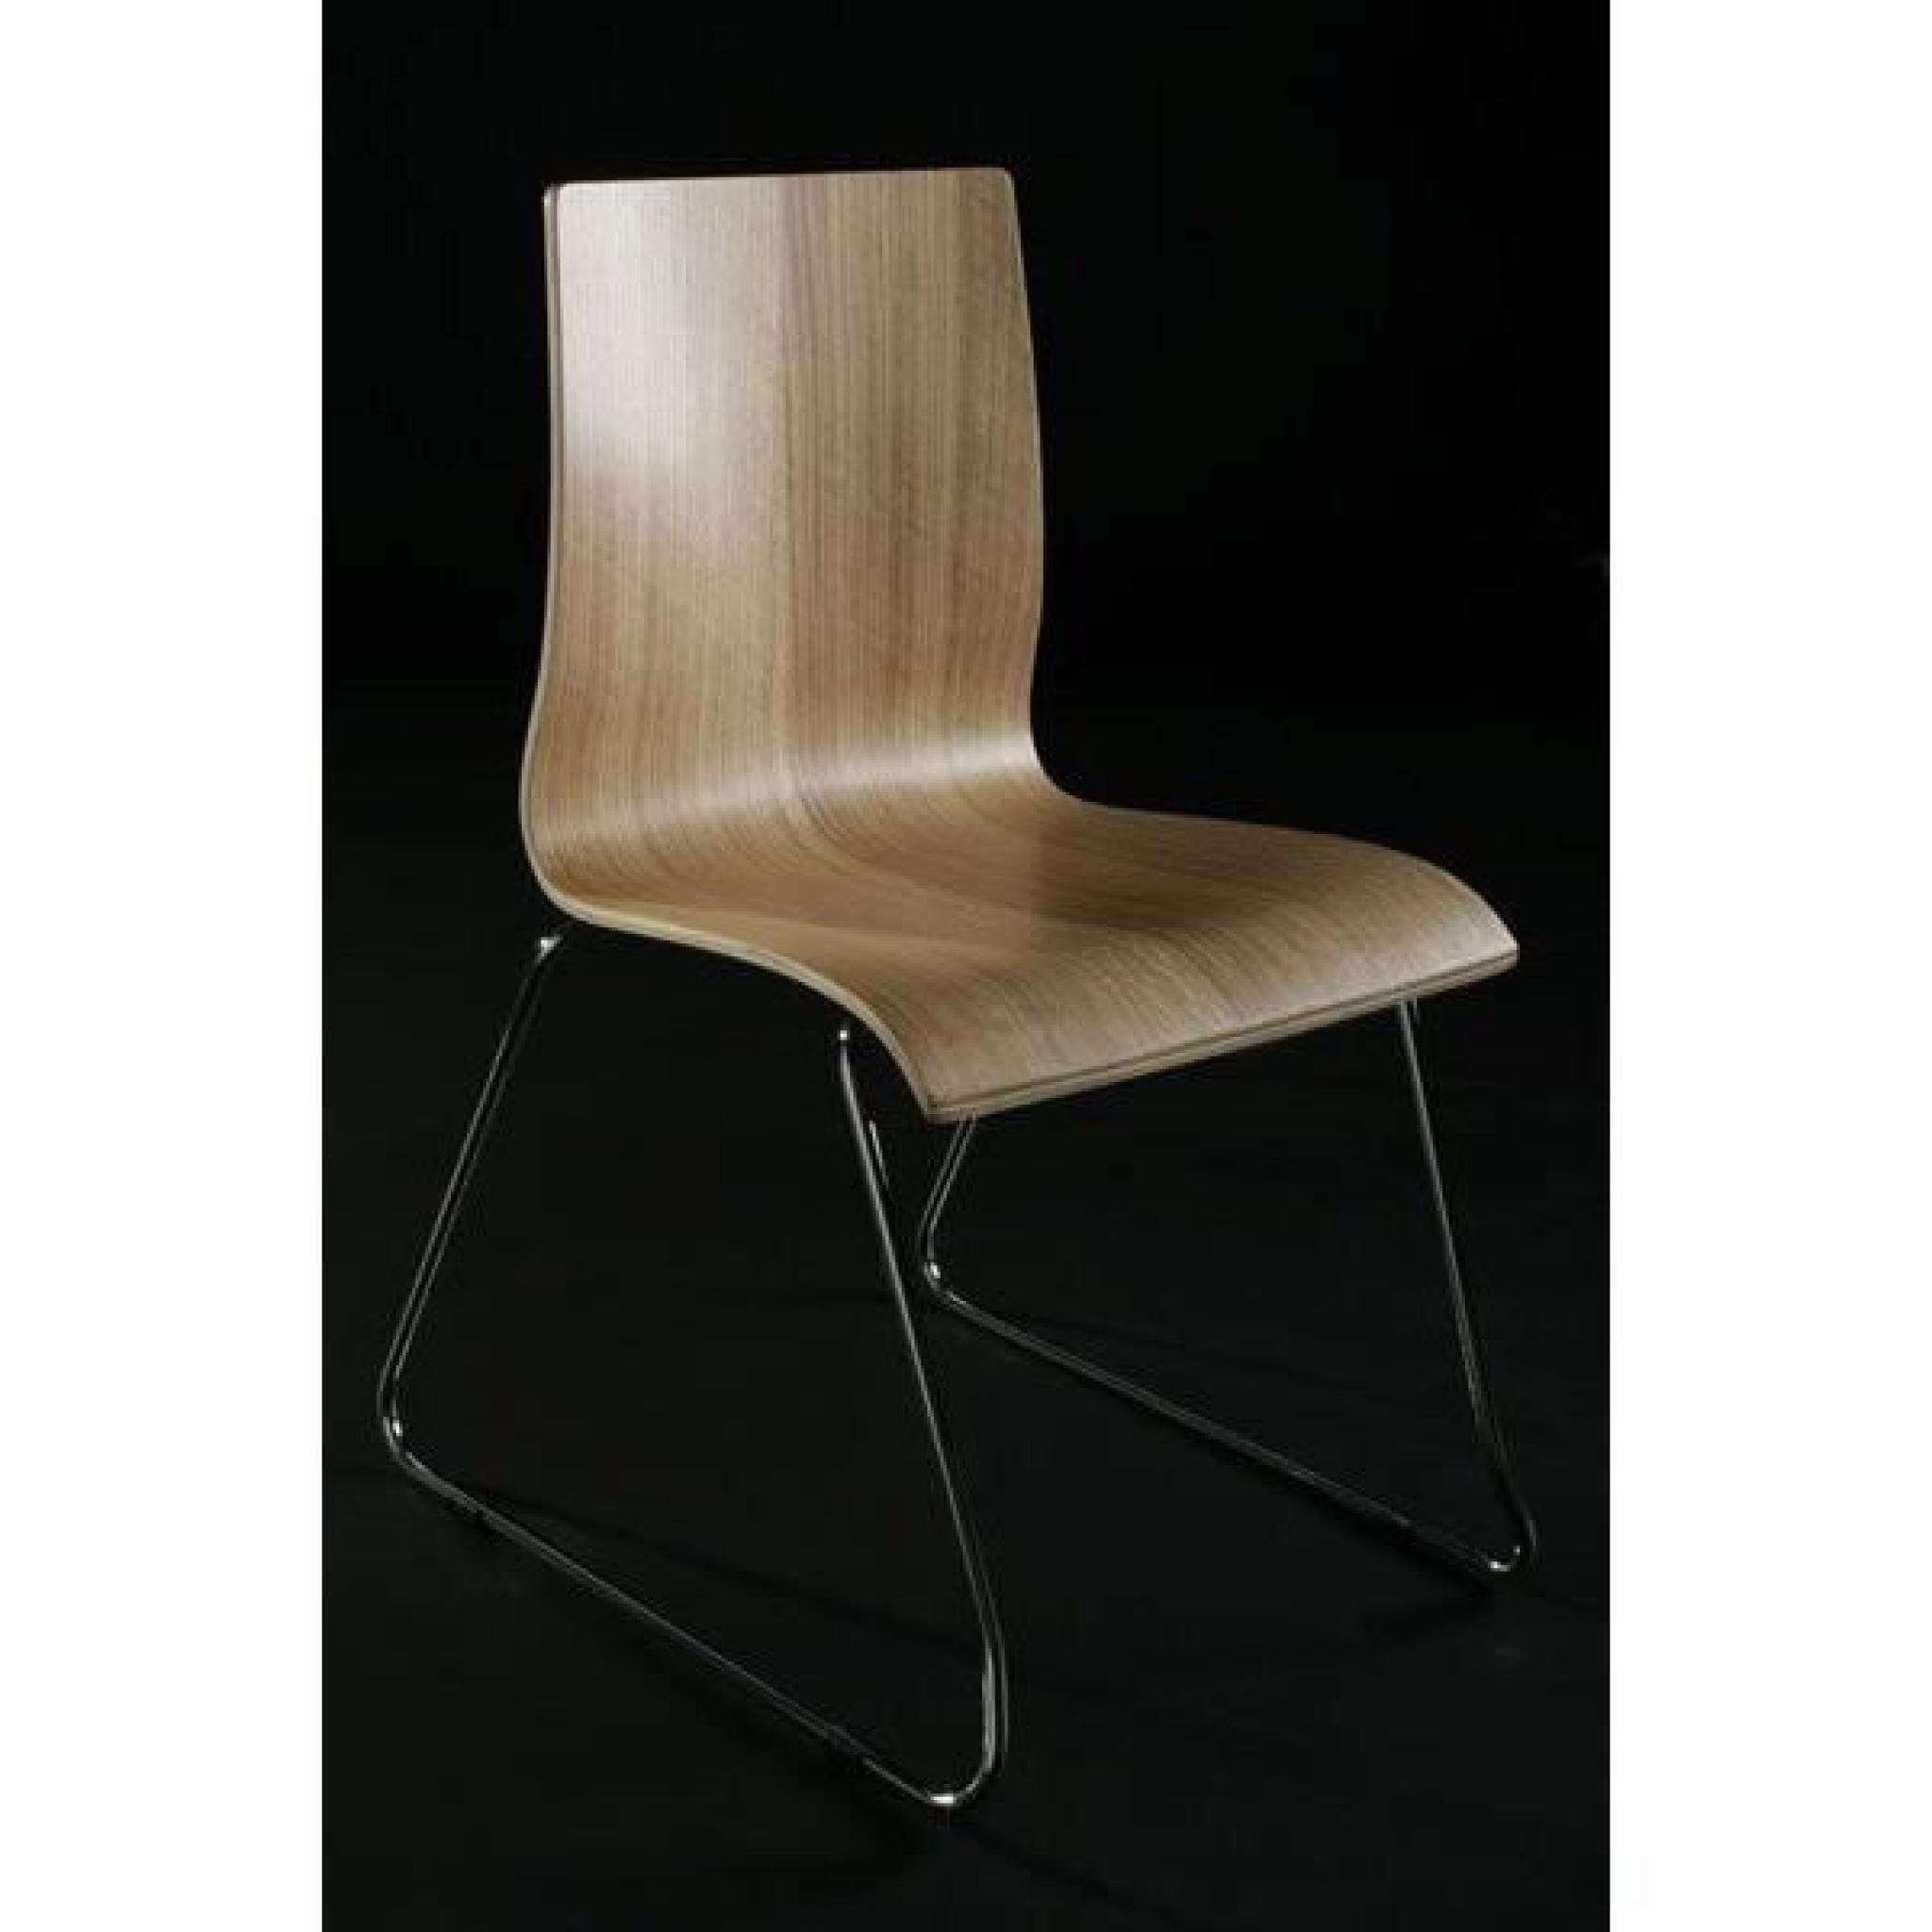 Chaise design en bois ou dérivés de couleur natu pas cher